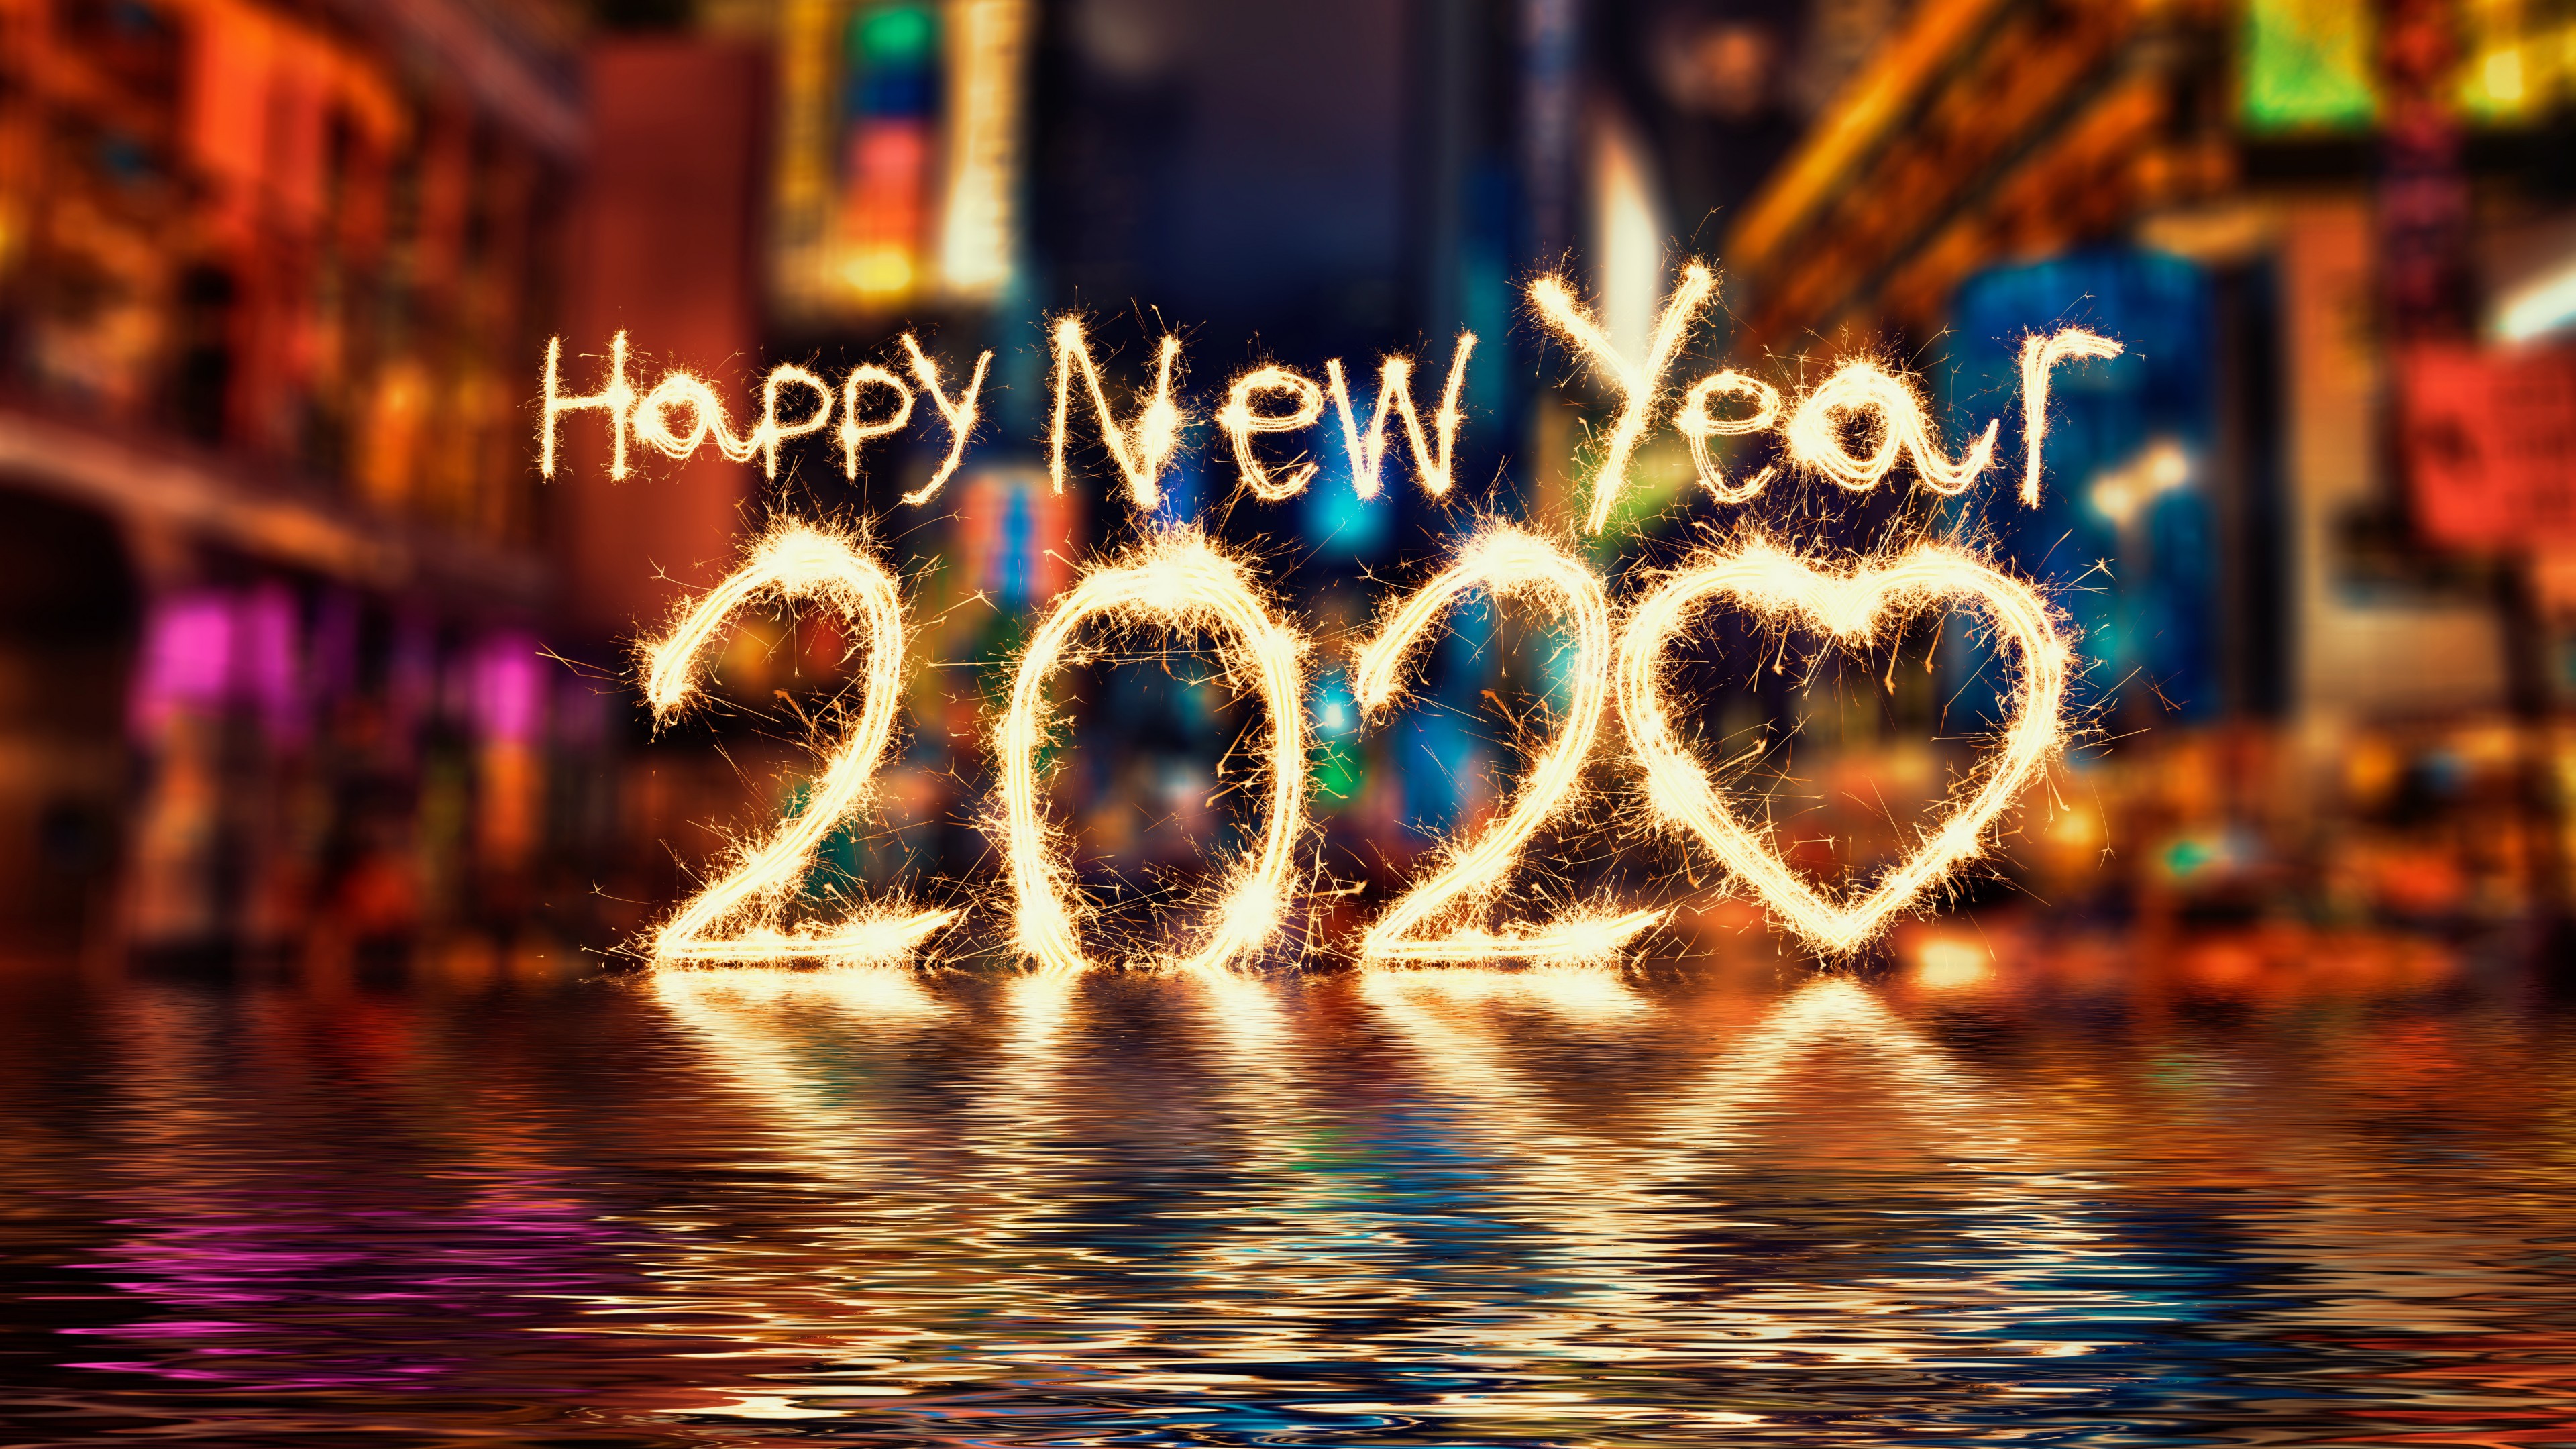 Happy New Year 2020 HD Wallpaper 4K for Desktop